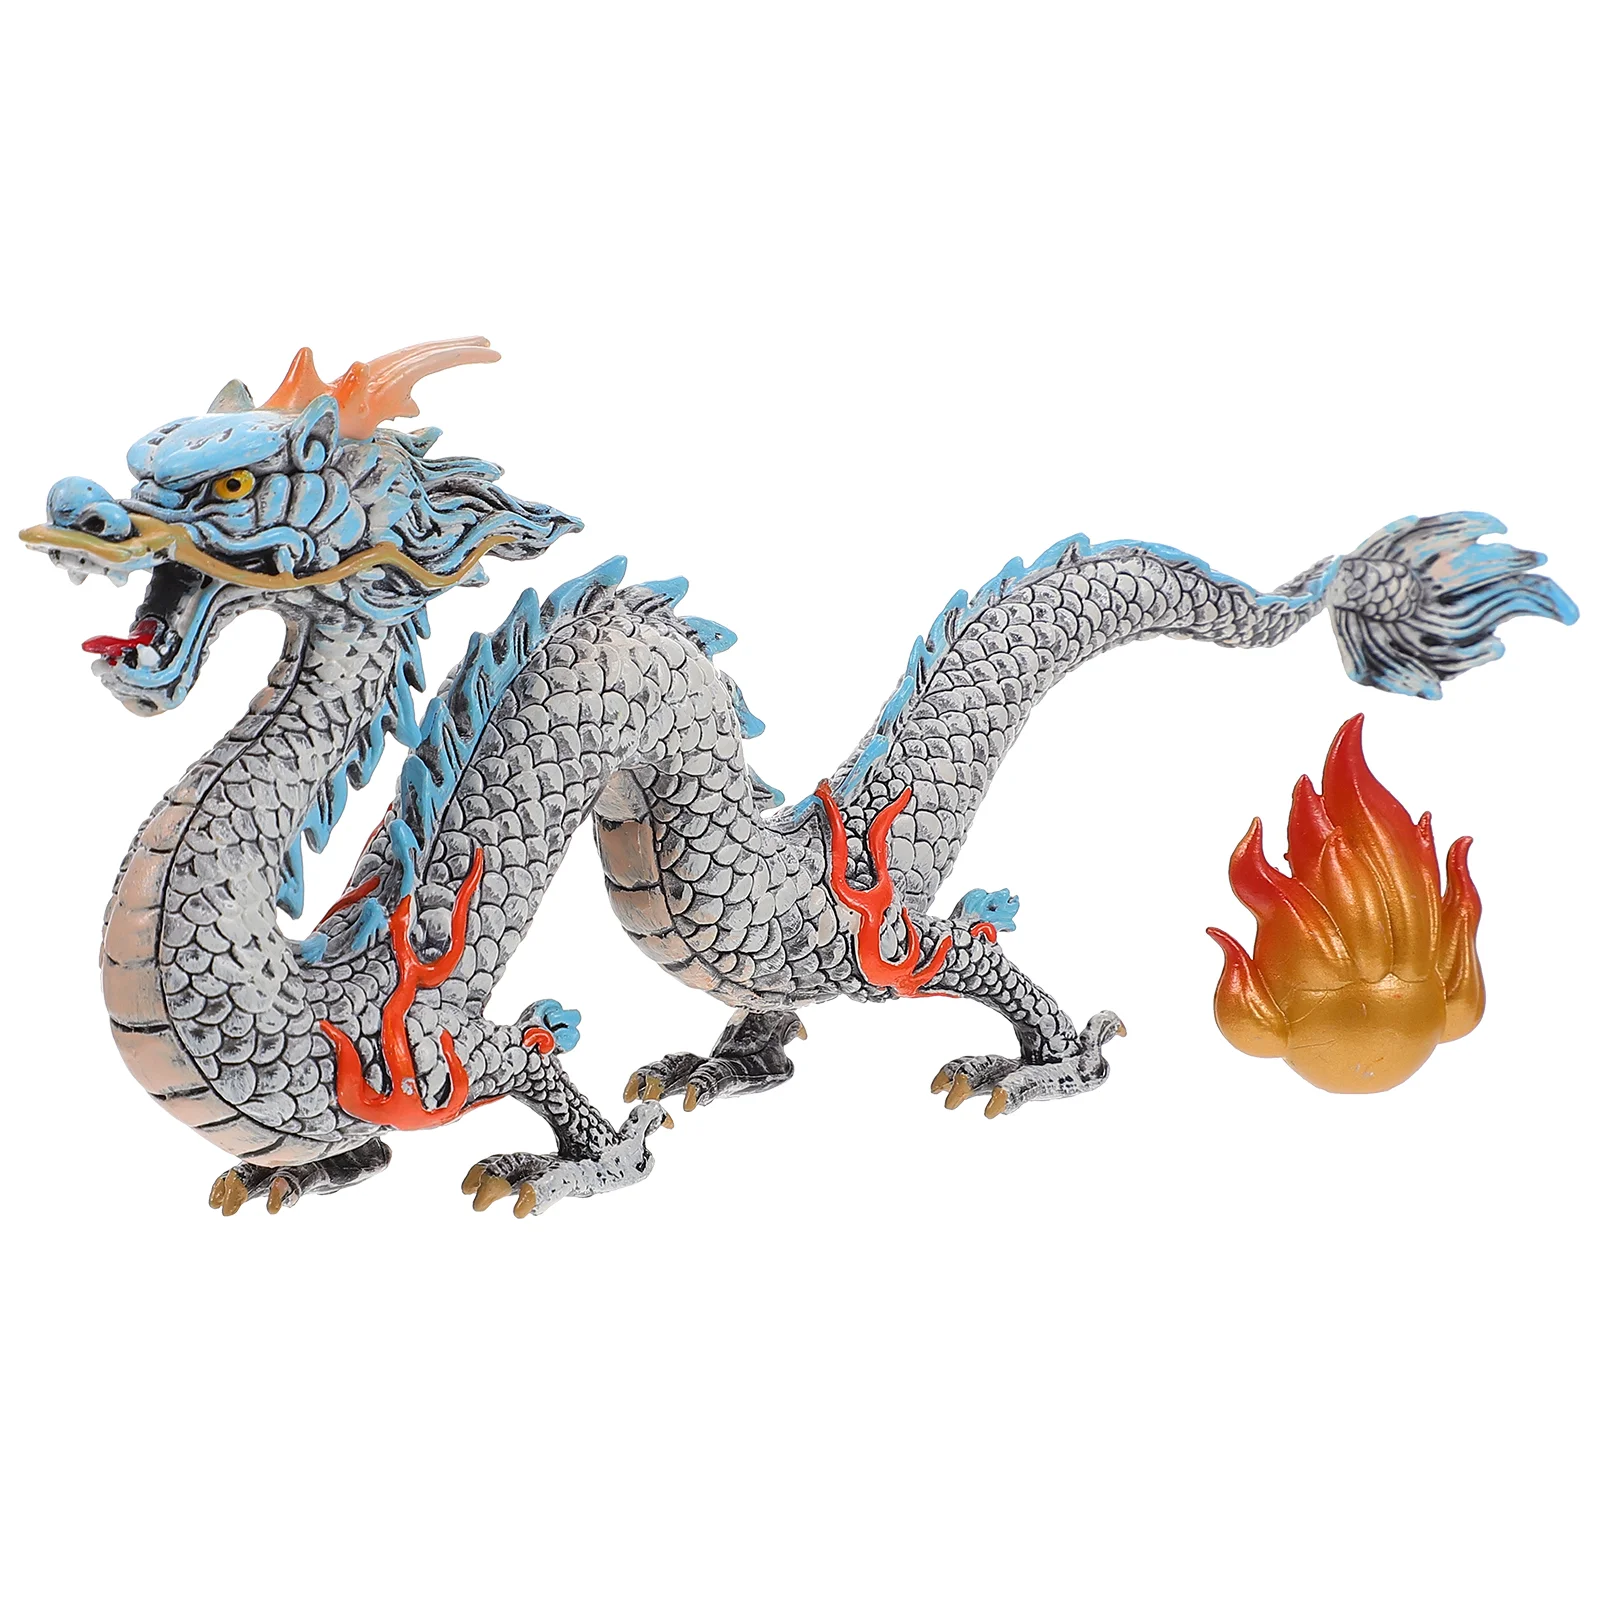 

1 шт. имитация китайского дракона фигурка животного, модель украшение для ребенка